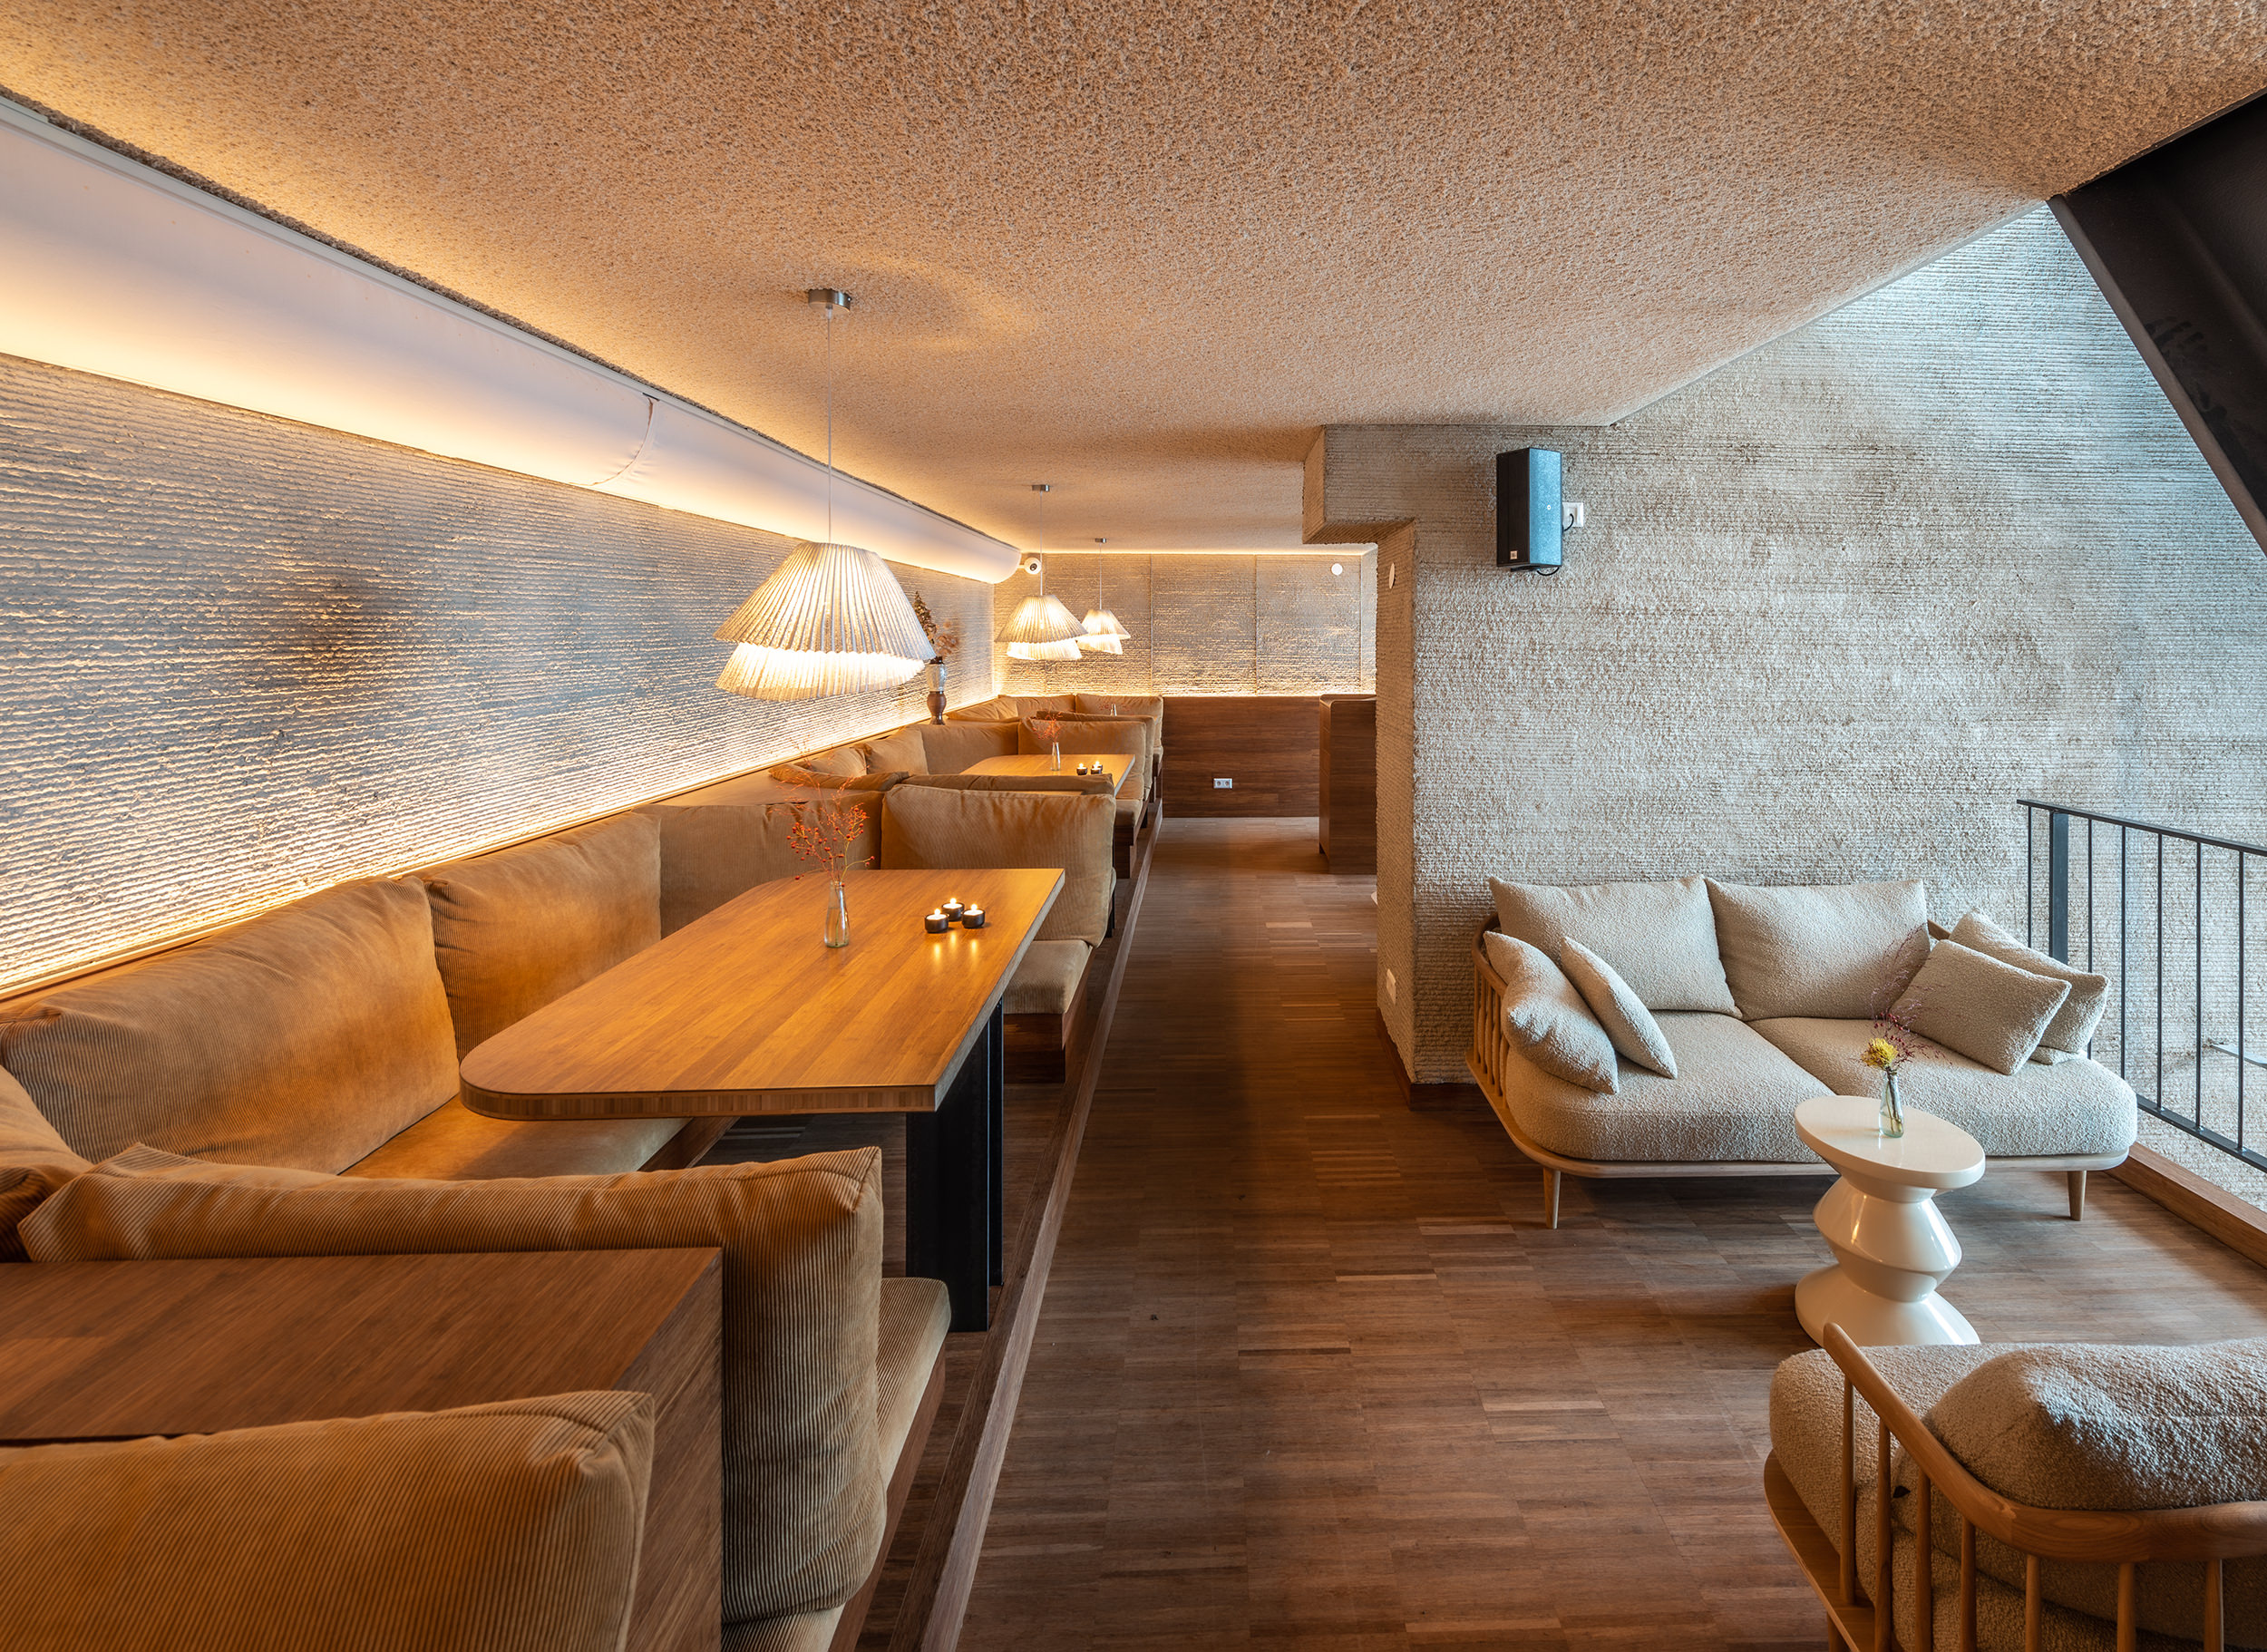 Zitplaats in restaurant Next met een lange bank en kleine poef rechts. Laag plafond met sfeerlicht aan de muur.